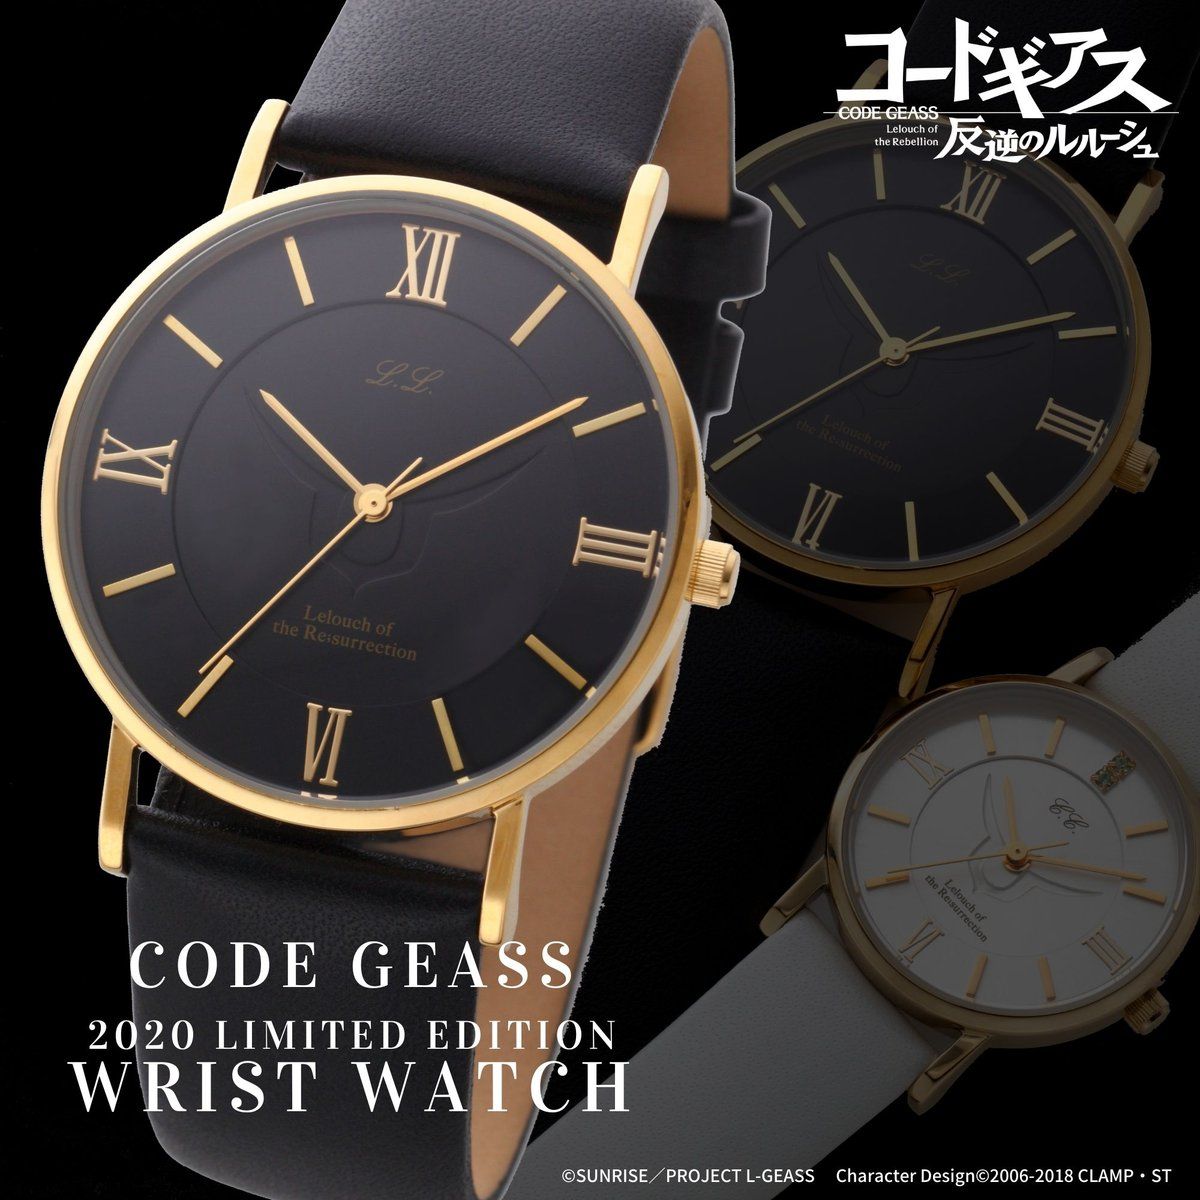 コードギアス リミテッドモデル 腕時計 コードギアスシリーズ 趣味 コレクション バンダイナムコグループ公式通販サイト